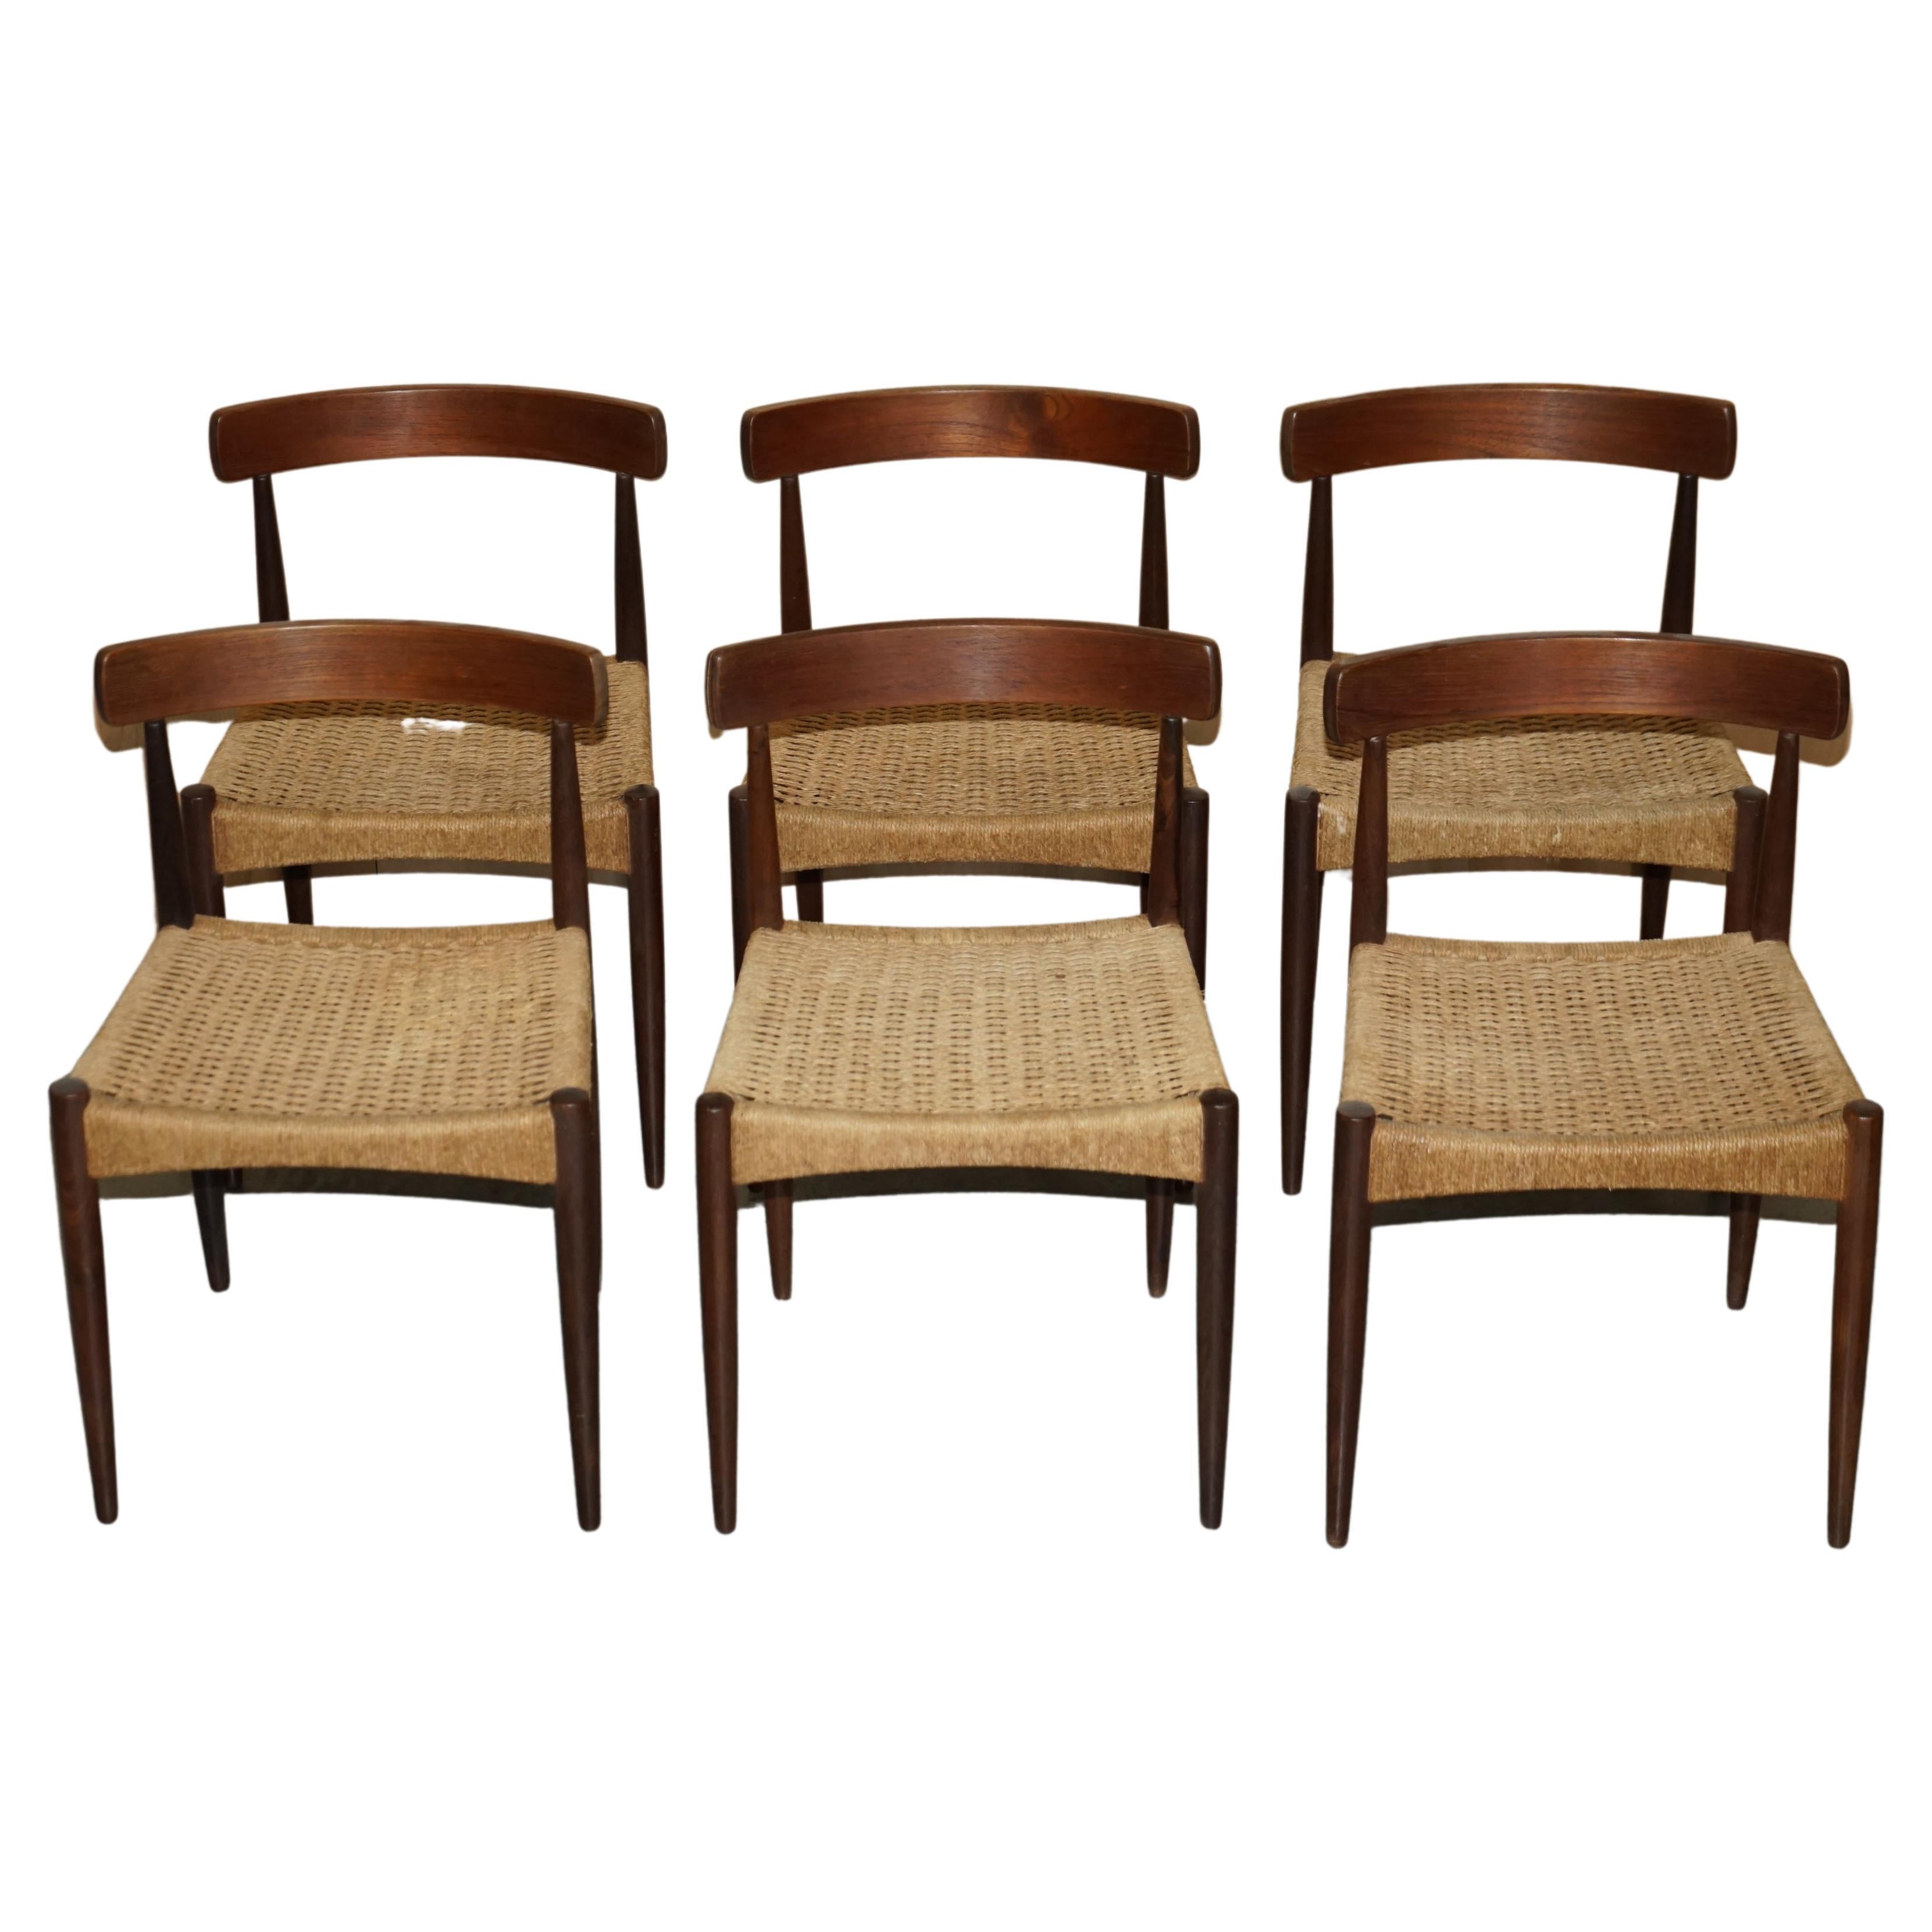 Six Original 1950's Arne Hovmand-Olsen Model #175 Dining Chairs for Mogens Kold